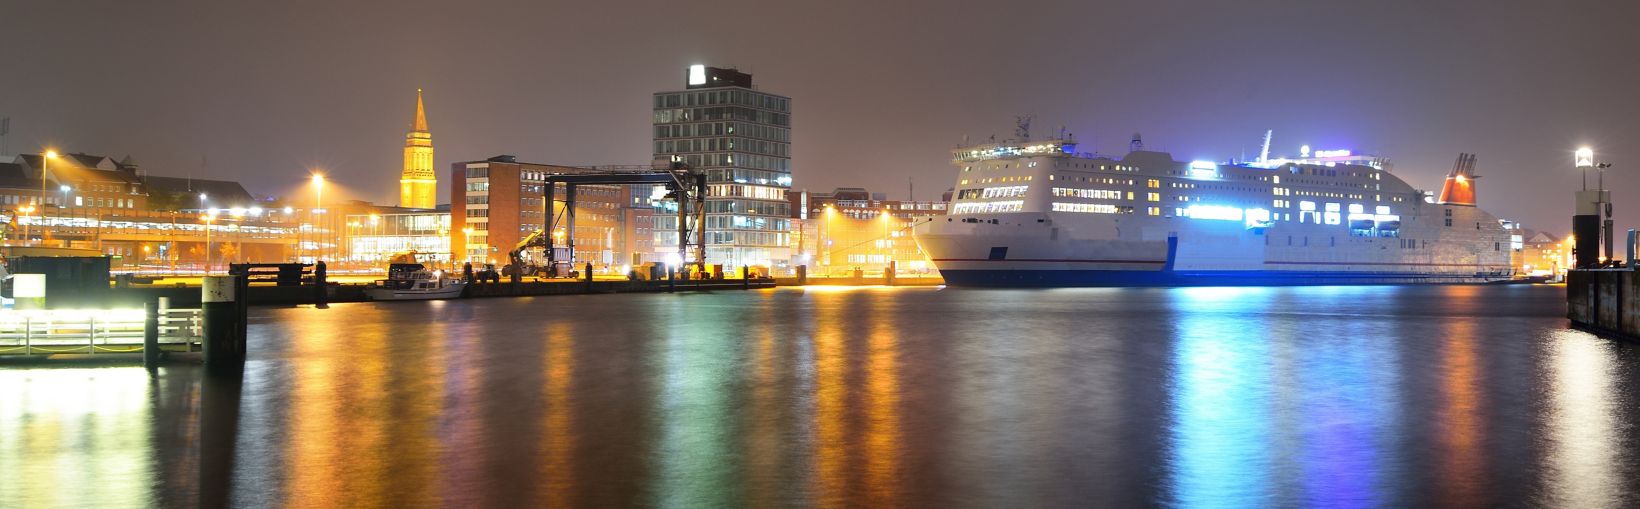 Stort, hvidt krydstogtskib i den oplyste passagerhavn om natten. Panoramisk bybillede. Kiel, Tyskland